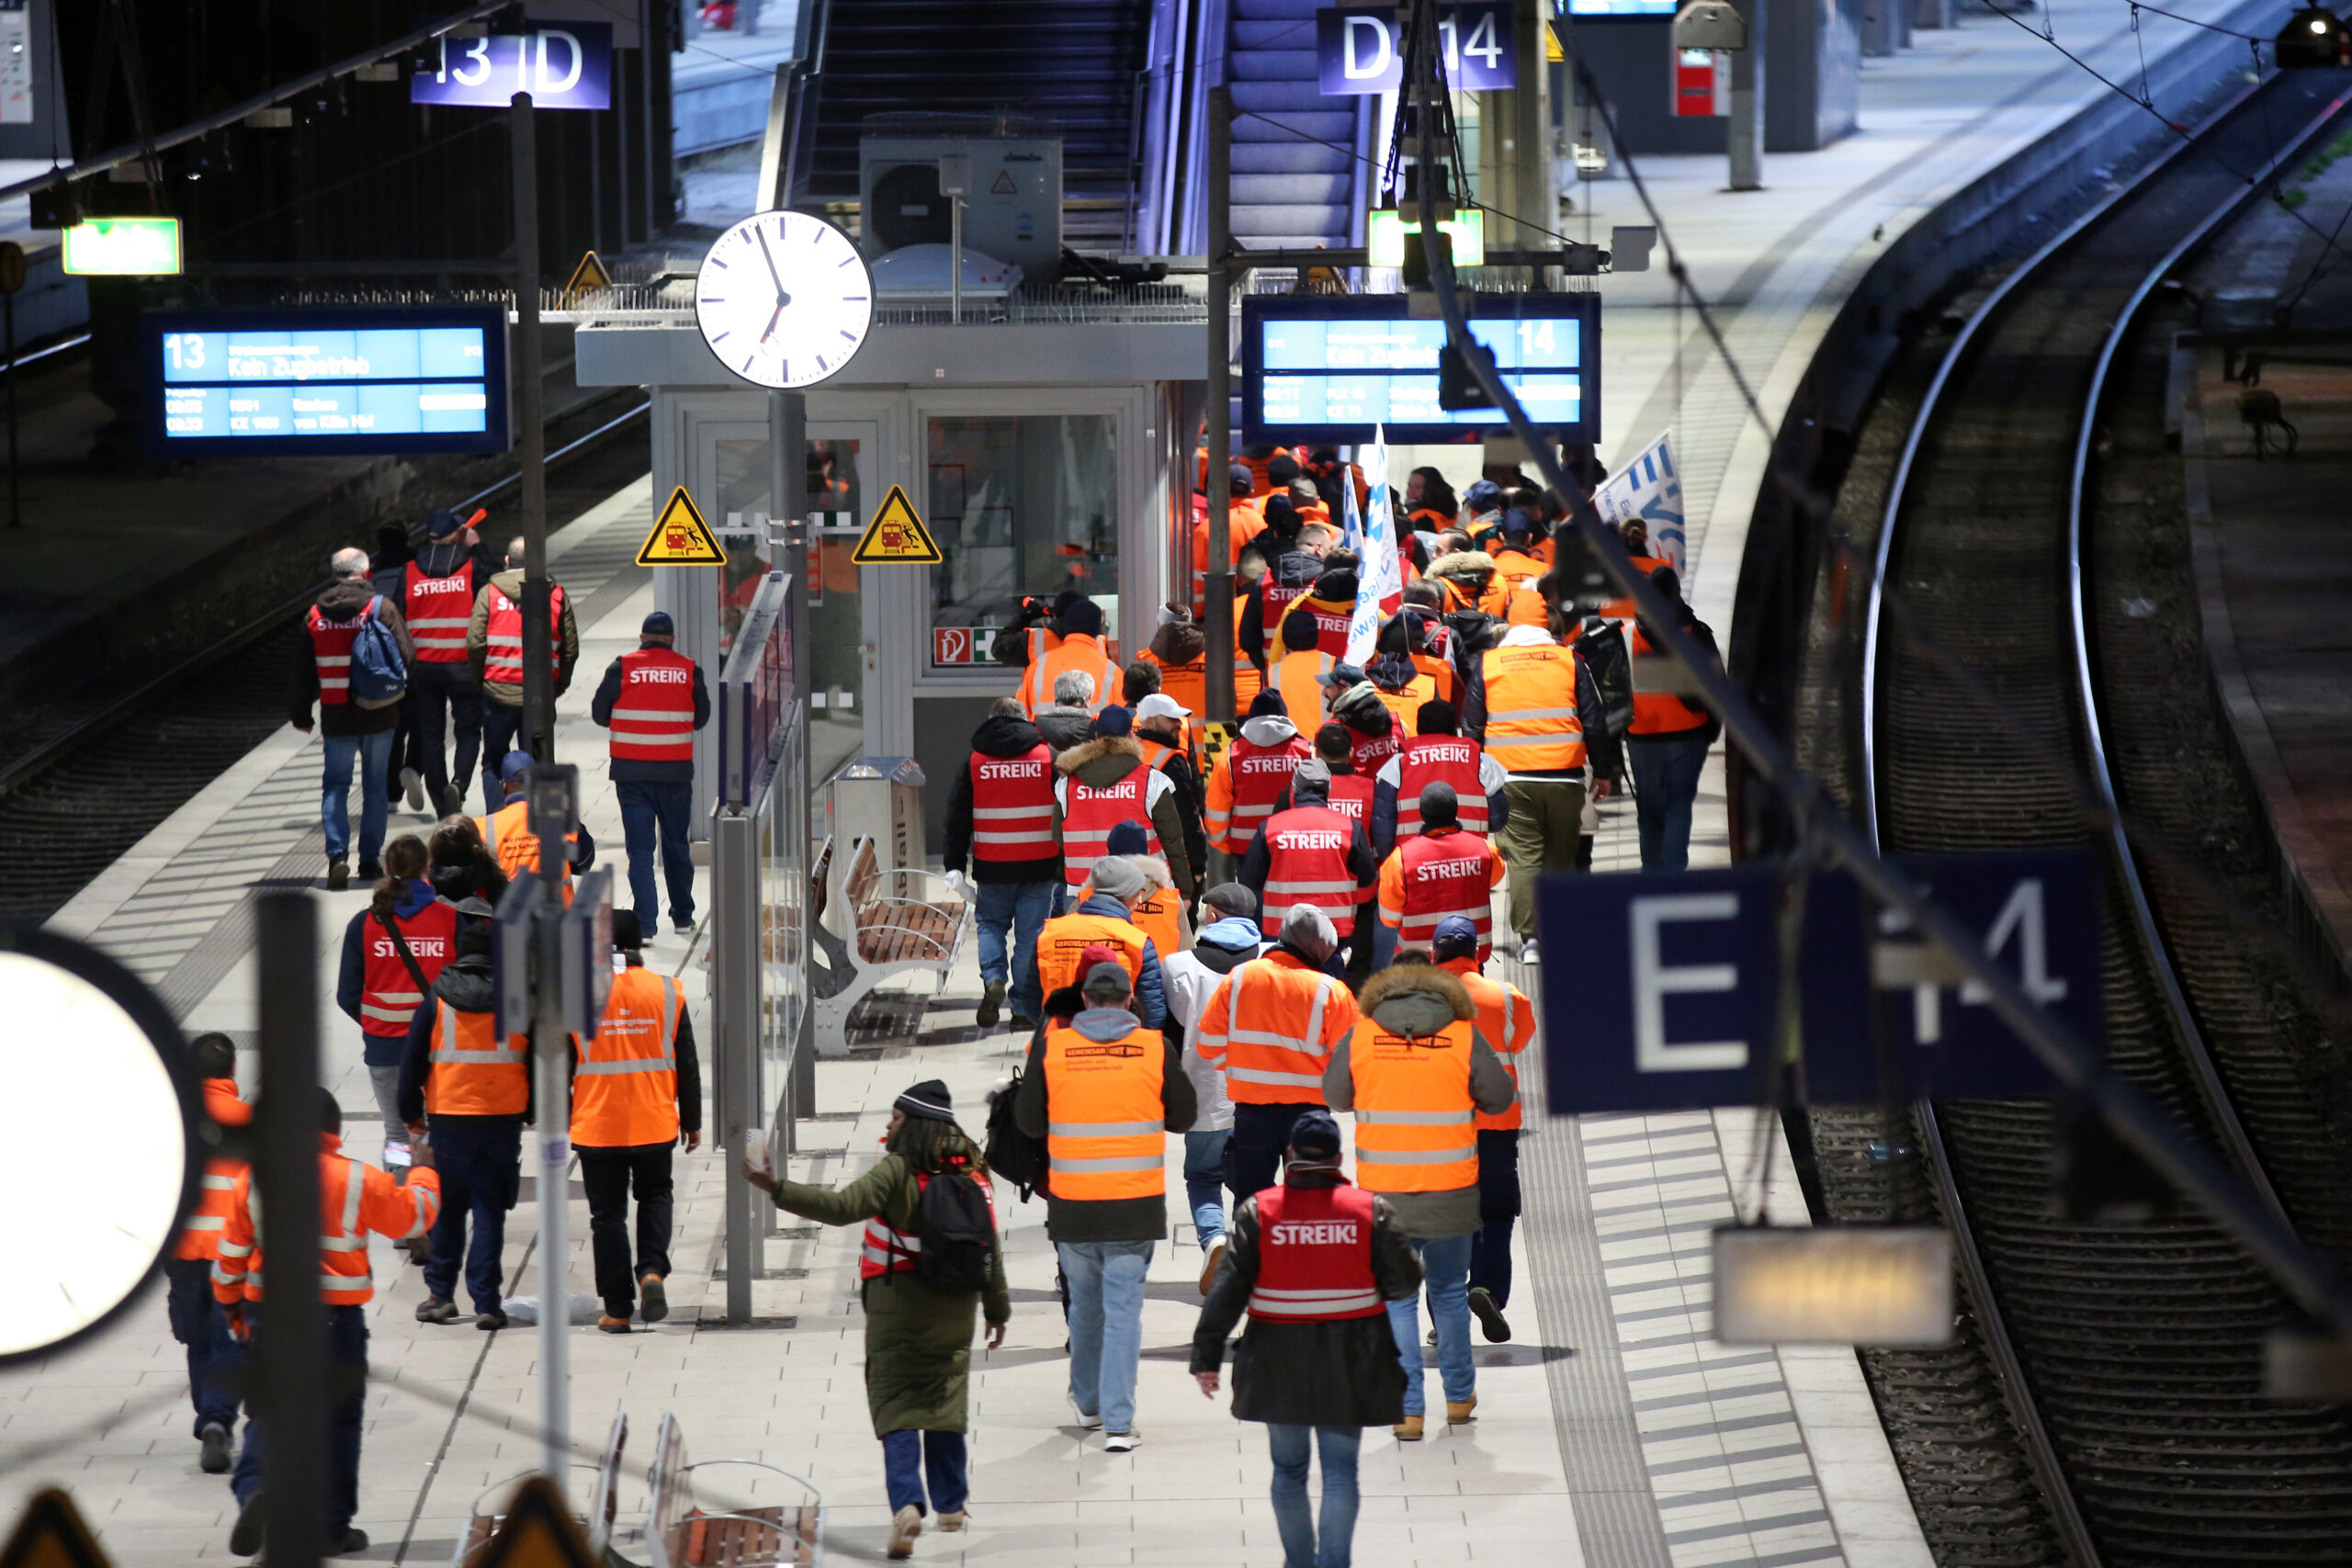 Streikende Mitglieder der EVG ziehen lautstark mit Fahnen und Streikwesten durch den Hamburger Hauptbahnhof.